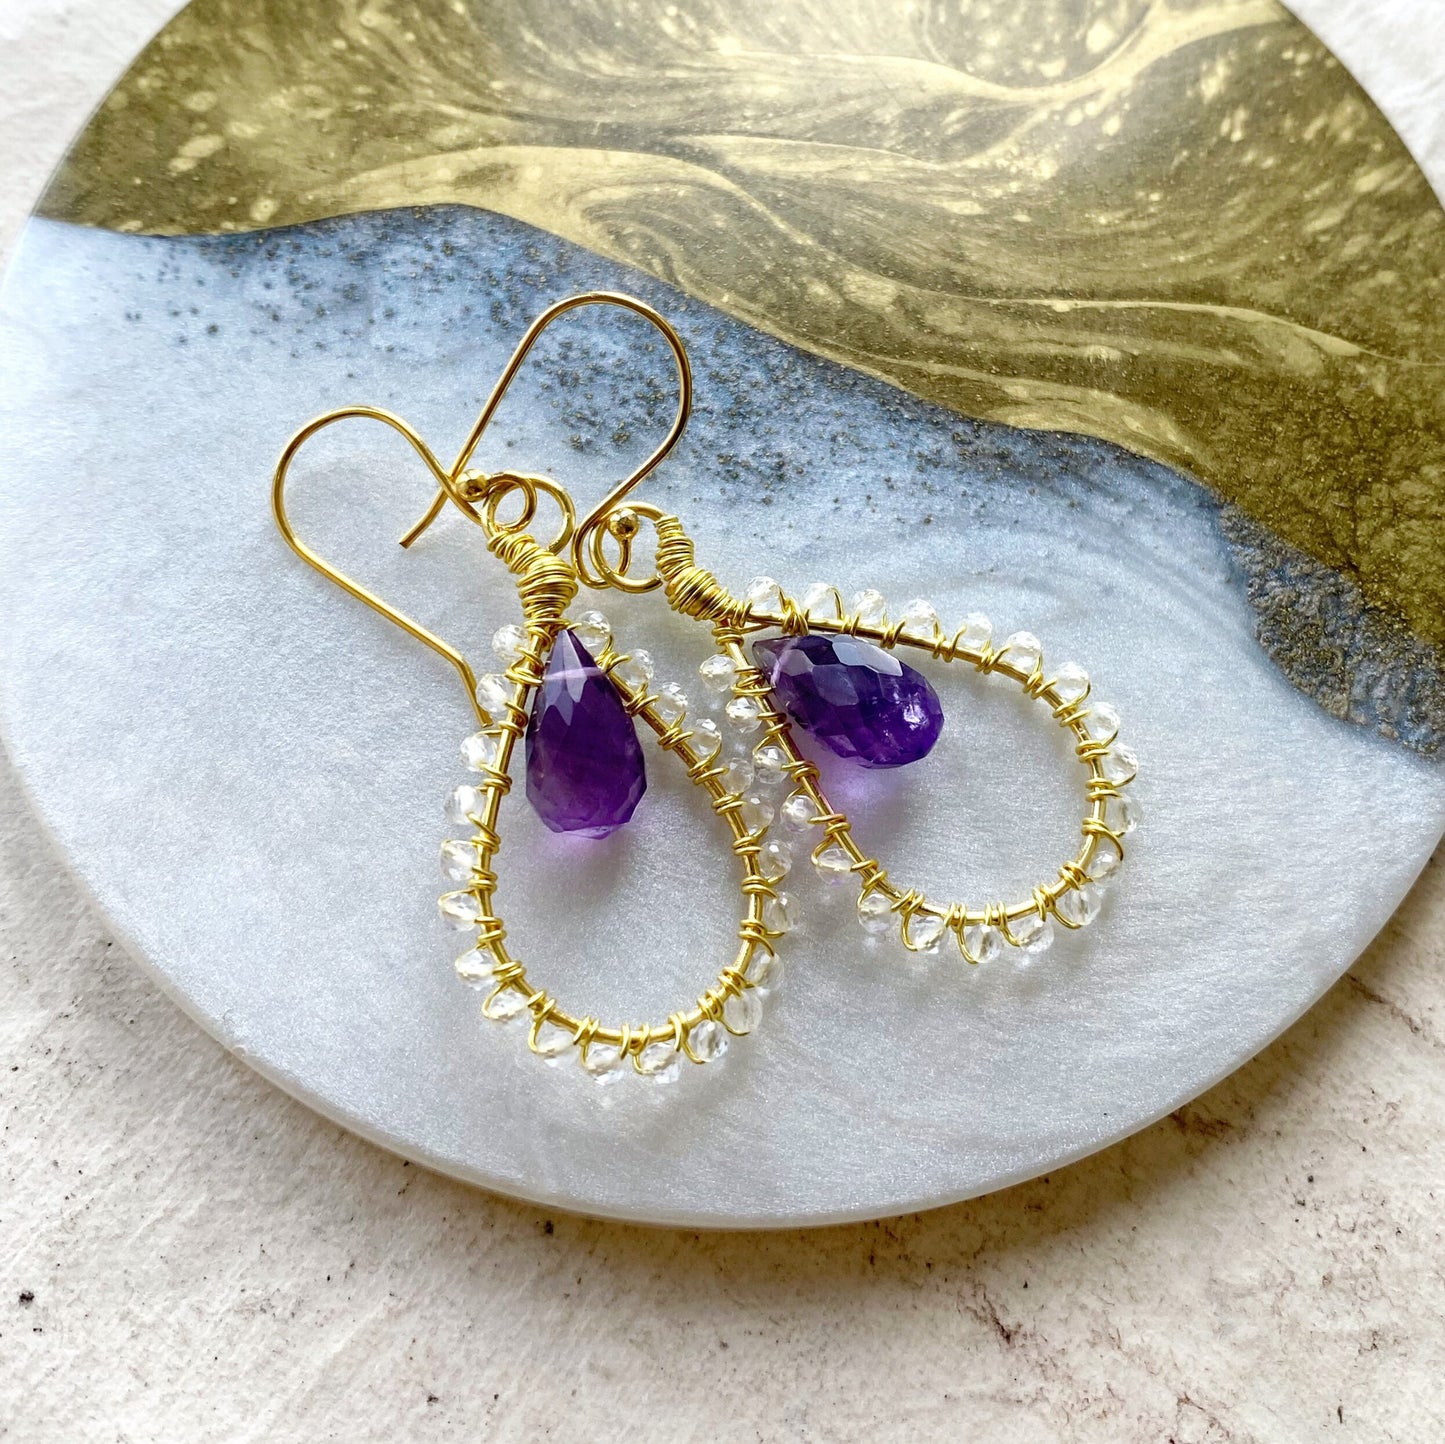 Amethyst and topaz Tudor inspired earrings